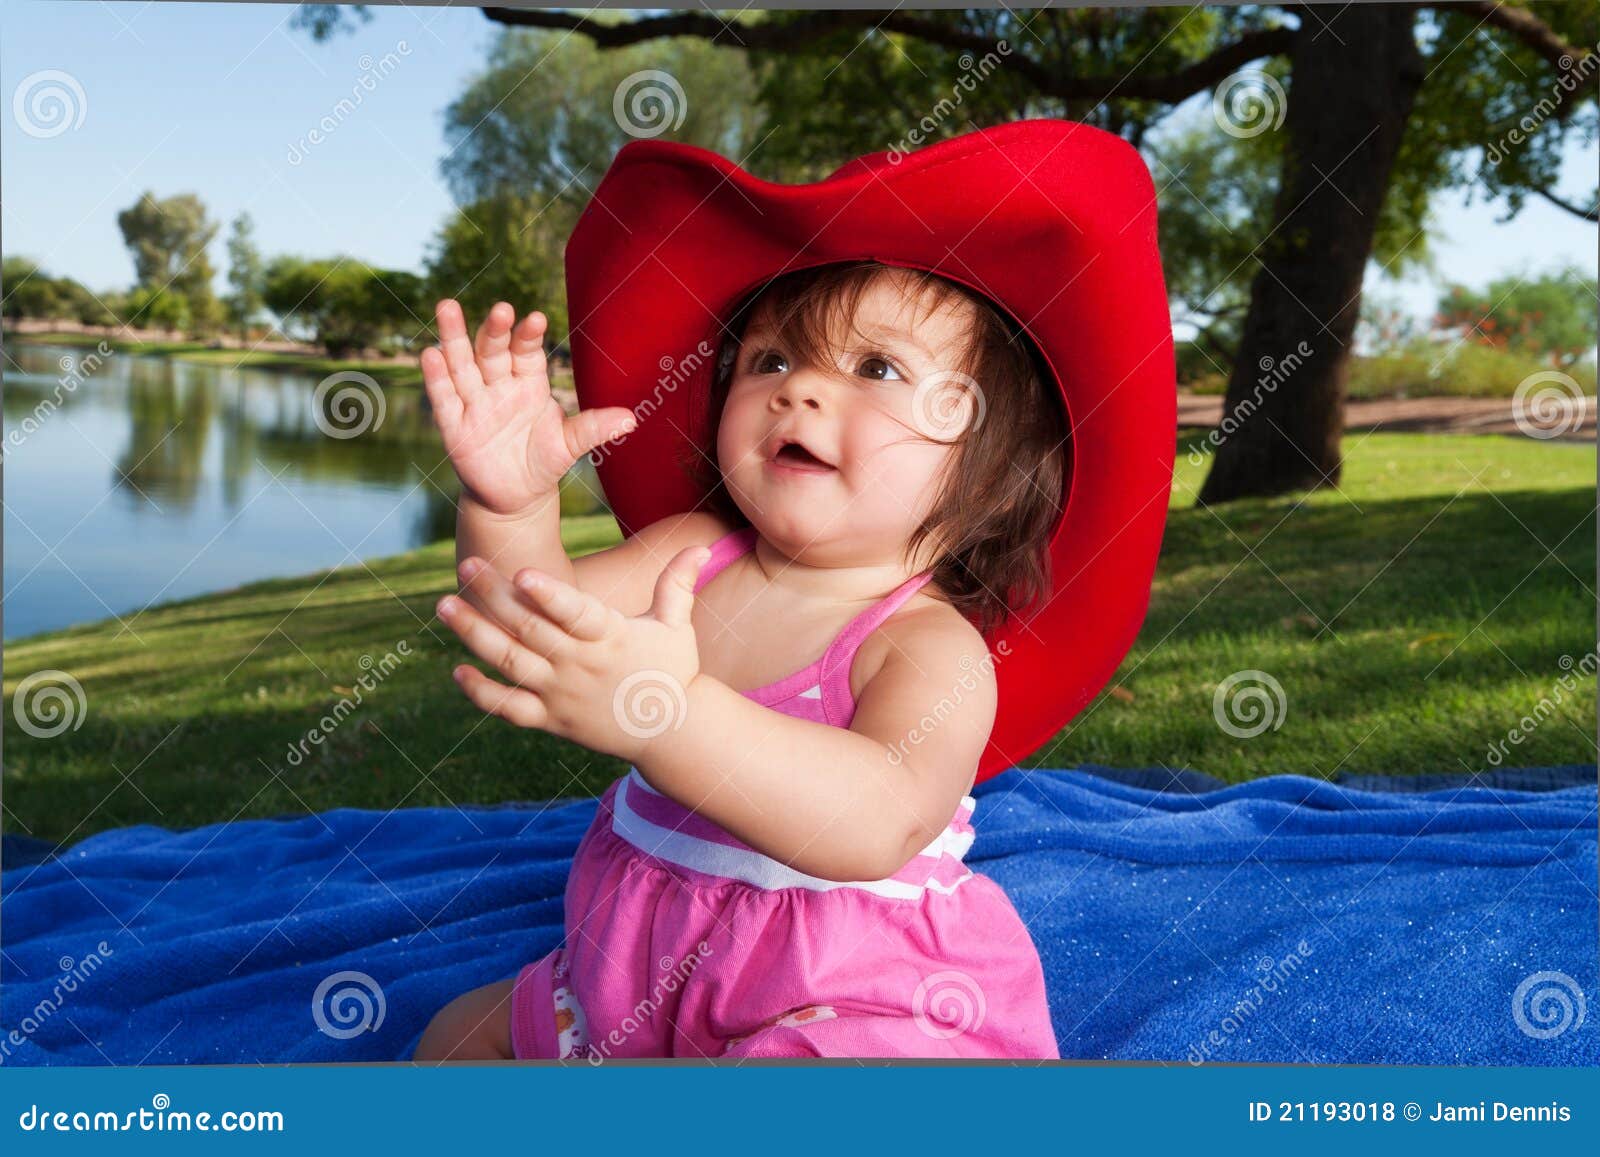 En Sombrero De Vaquero de archivo - Imagen infante, hija: 21193018